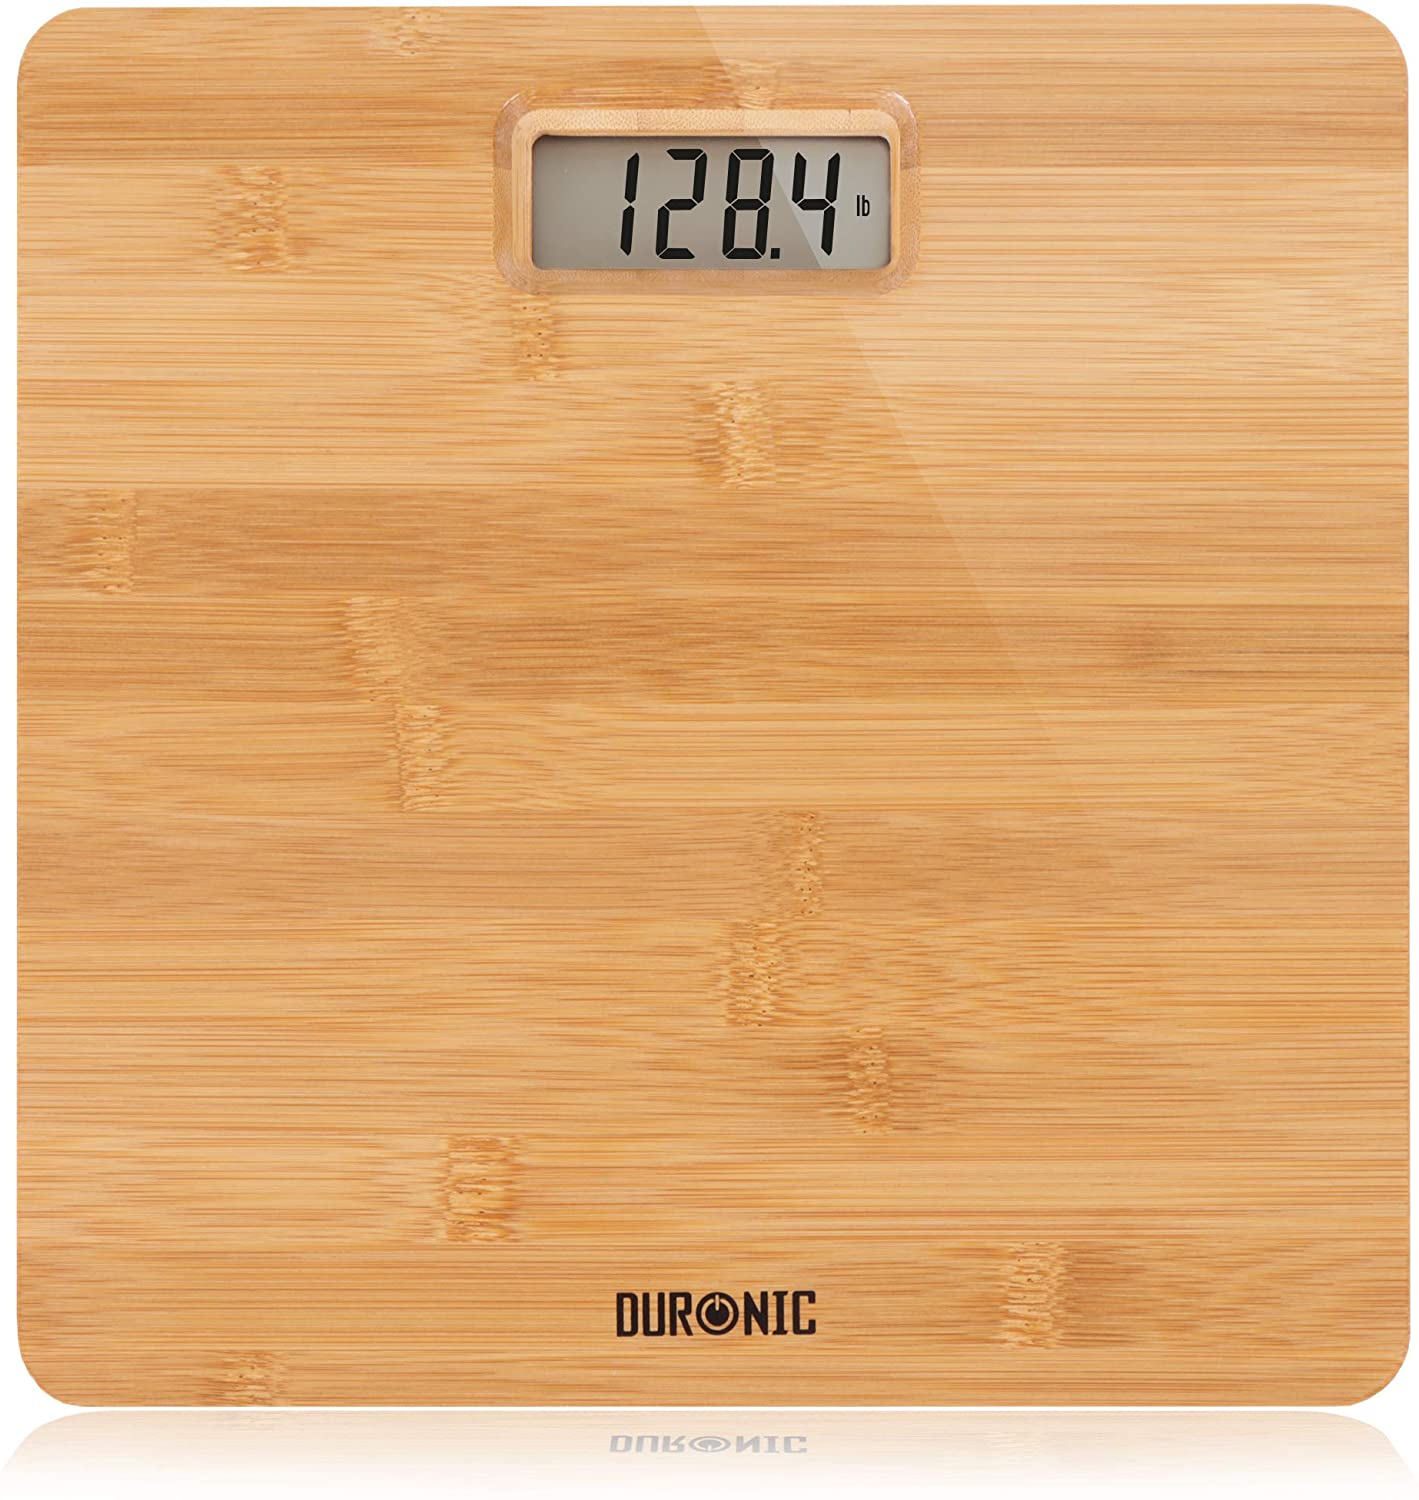 Duronic Bs503 De baño digital capacidad 180kg mide el peso corporal kilos libras y stone diseño madera enciende al subirse sensores lb